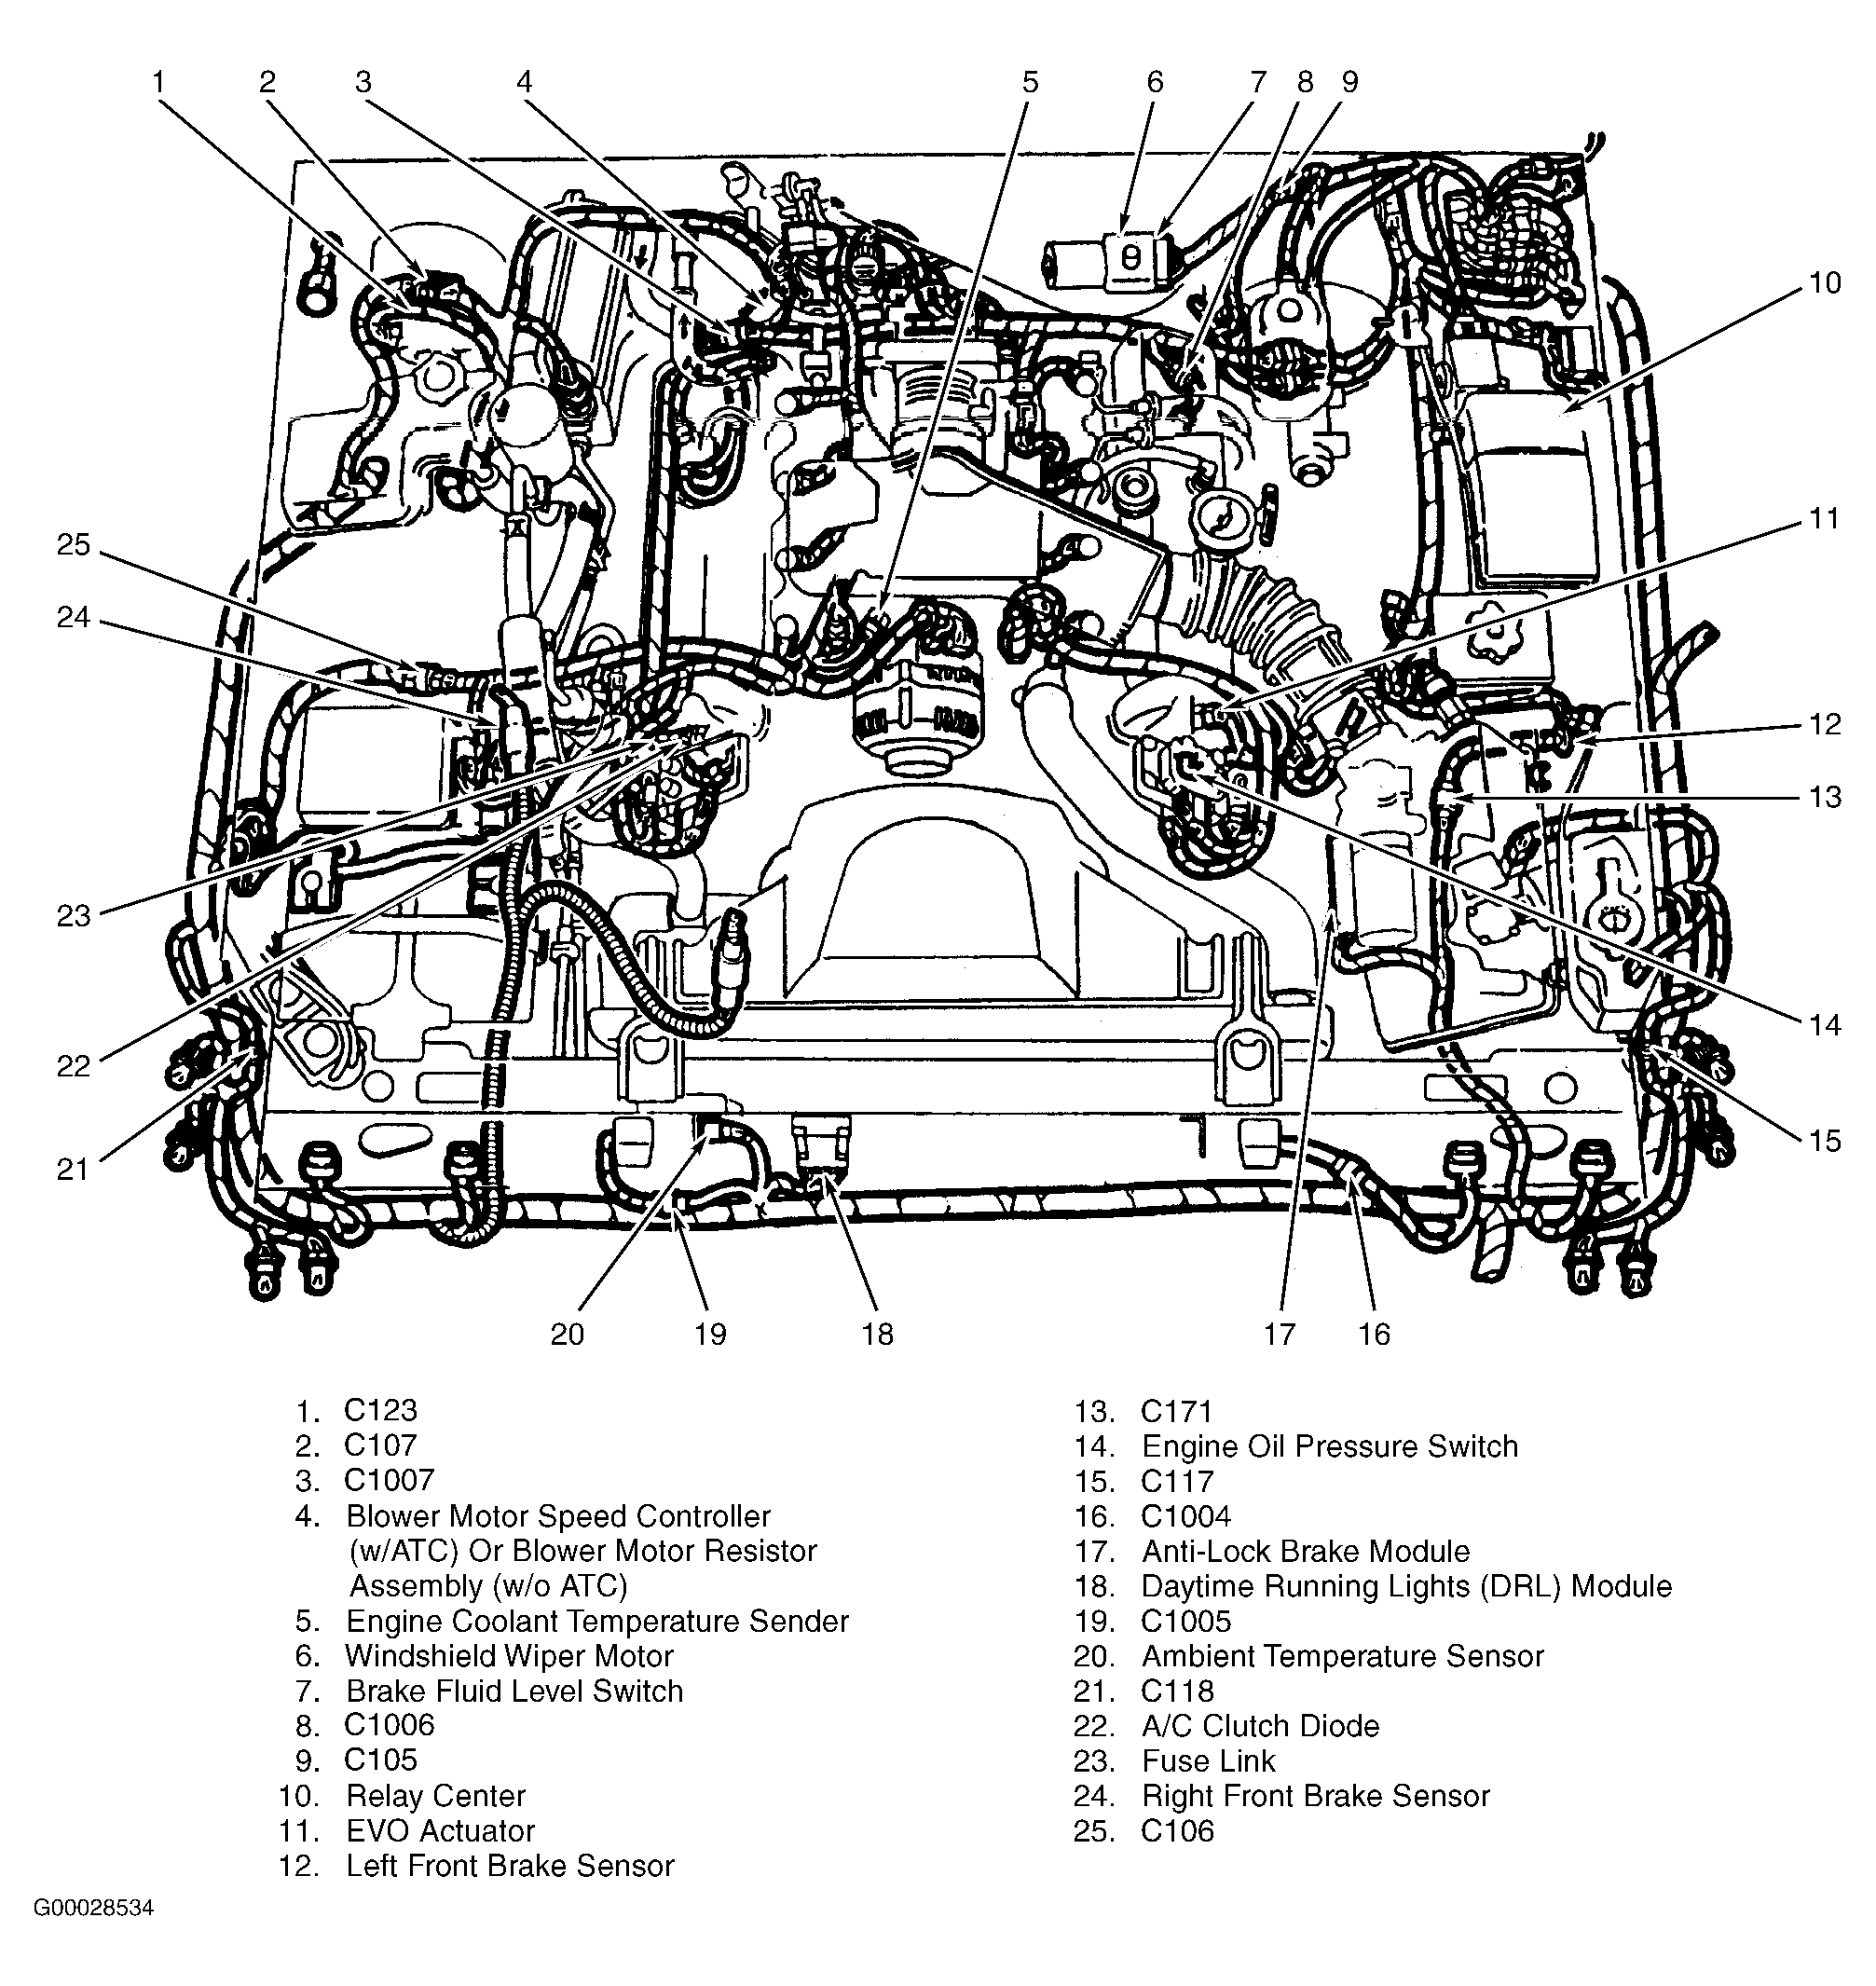 1996 Mercury Grand Marqui Engine Diagram